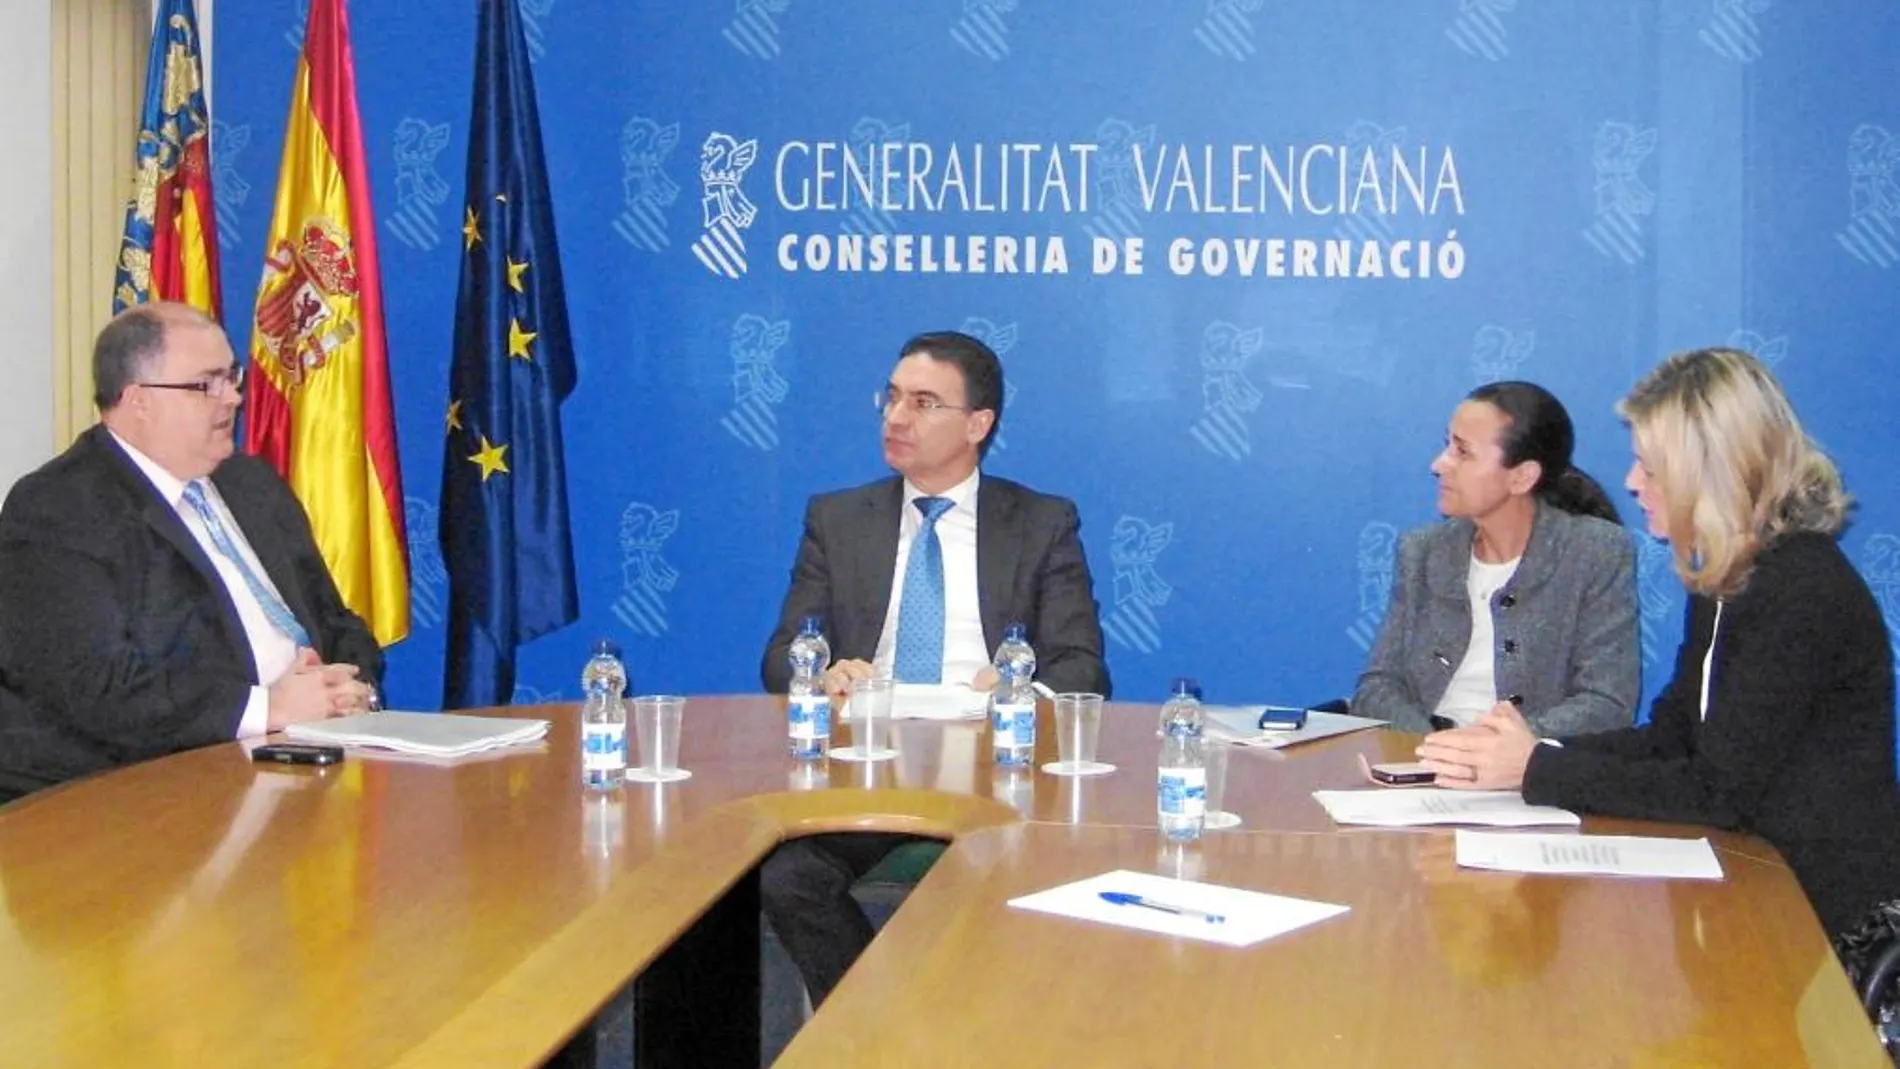 De izquierda a derecha: De Rosa, Castellano, De la Oliva y Bravo